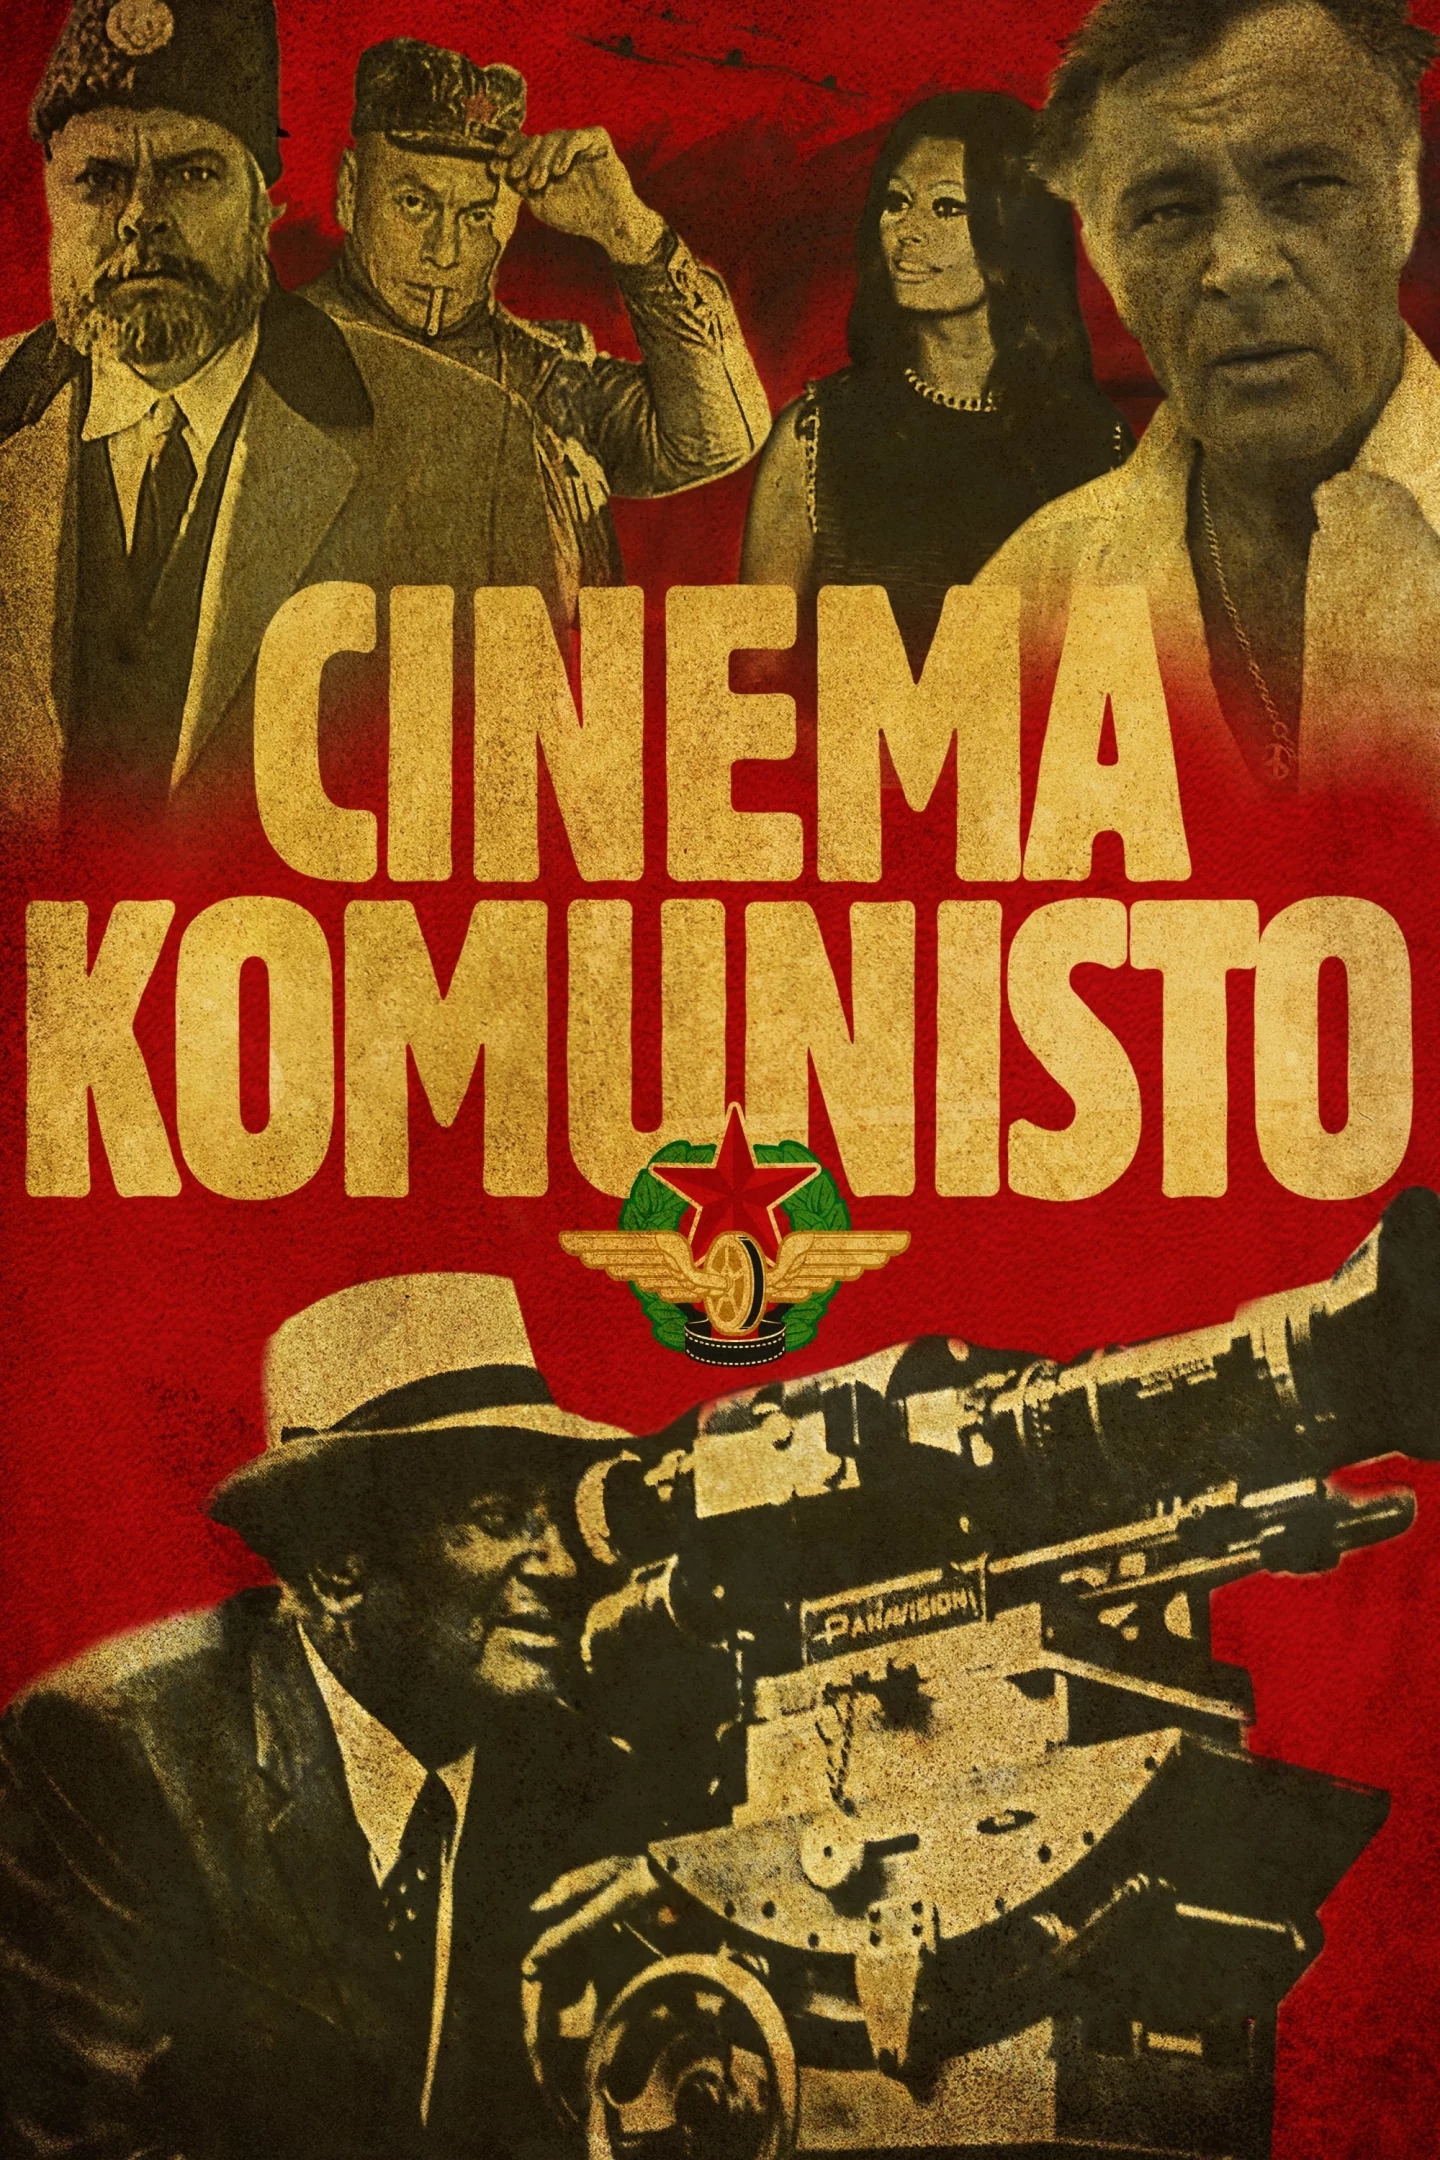 Photo du film : Il était une fois en Yougoslavie : Cinema Komunisto